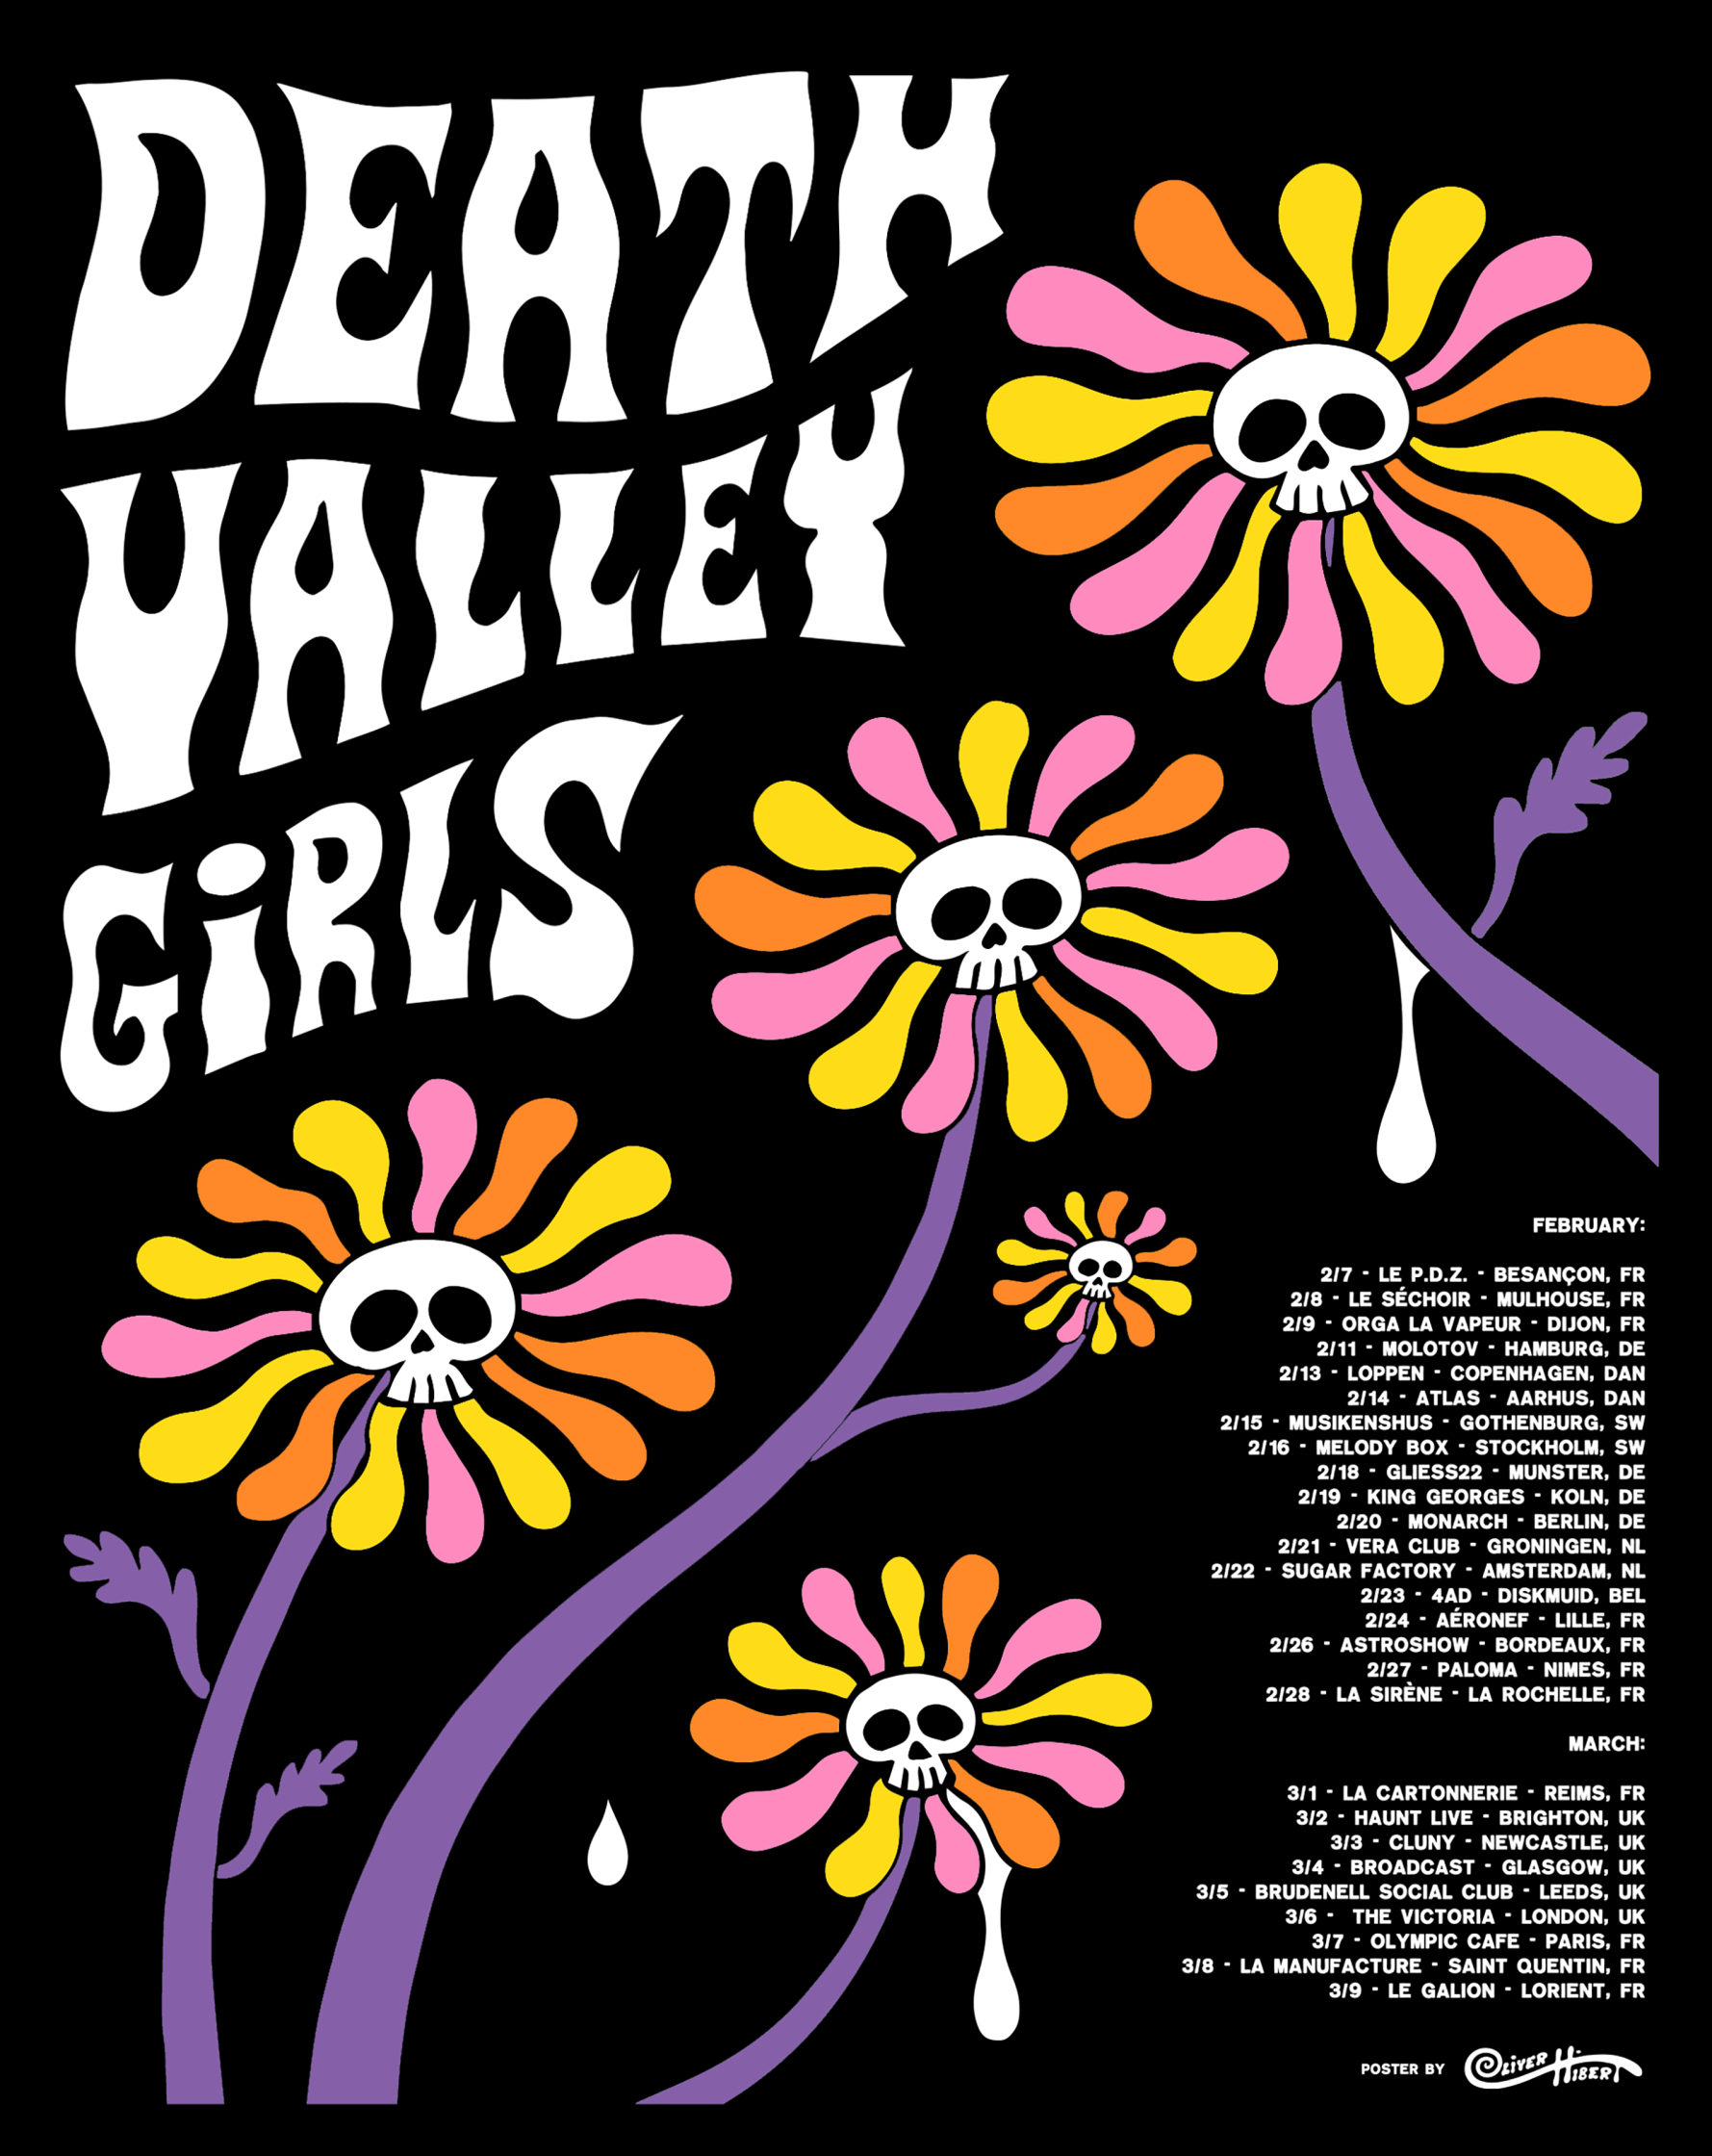 Hibert_Death Valley Girls Rock Poster.jpg